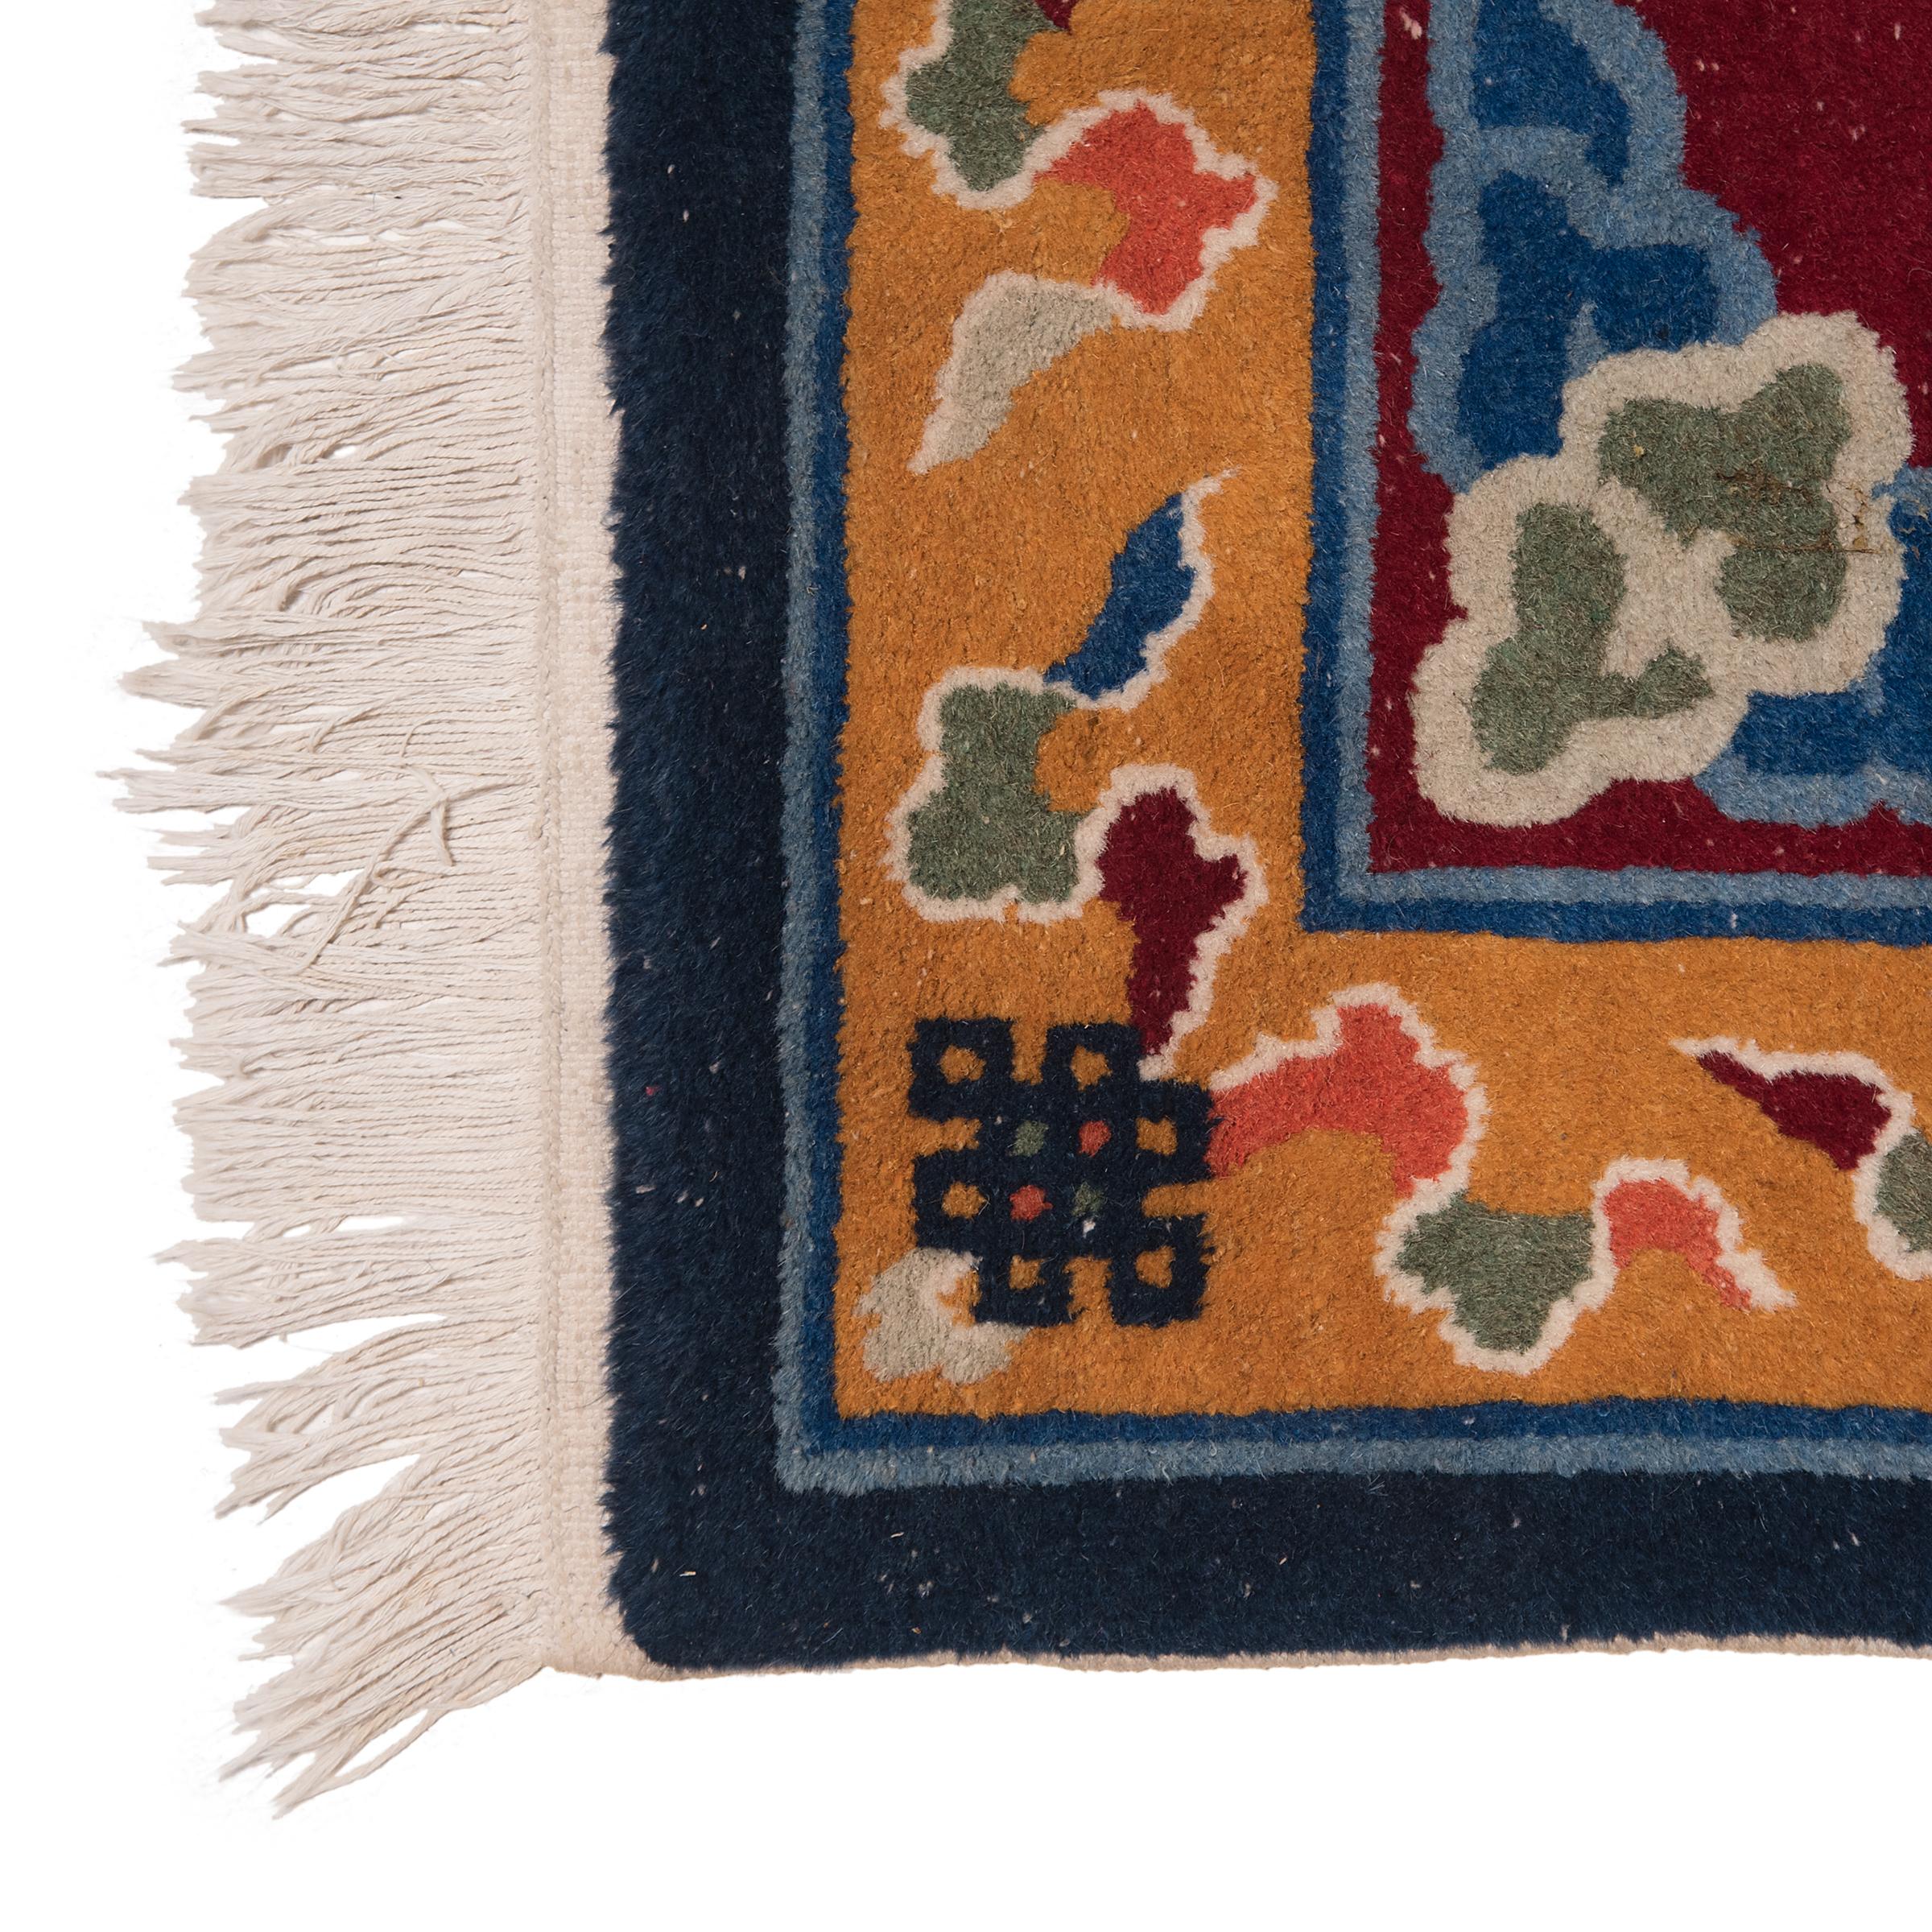 Dieser kleine, rechteckige Teppich stellt traditionelle chinesische Teppichmuster mit einer kräftigen Farbpalette aus Kastanienbraun, Marineblau und Senfgelb nach. Auf dem weinroten Feld befindet sich ein zentrales Medaillon mit einem himmlischen